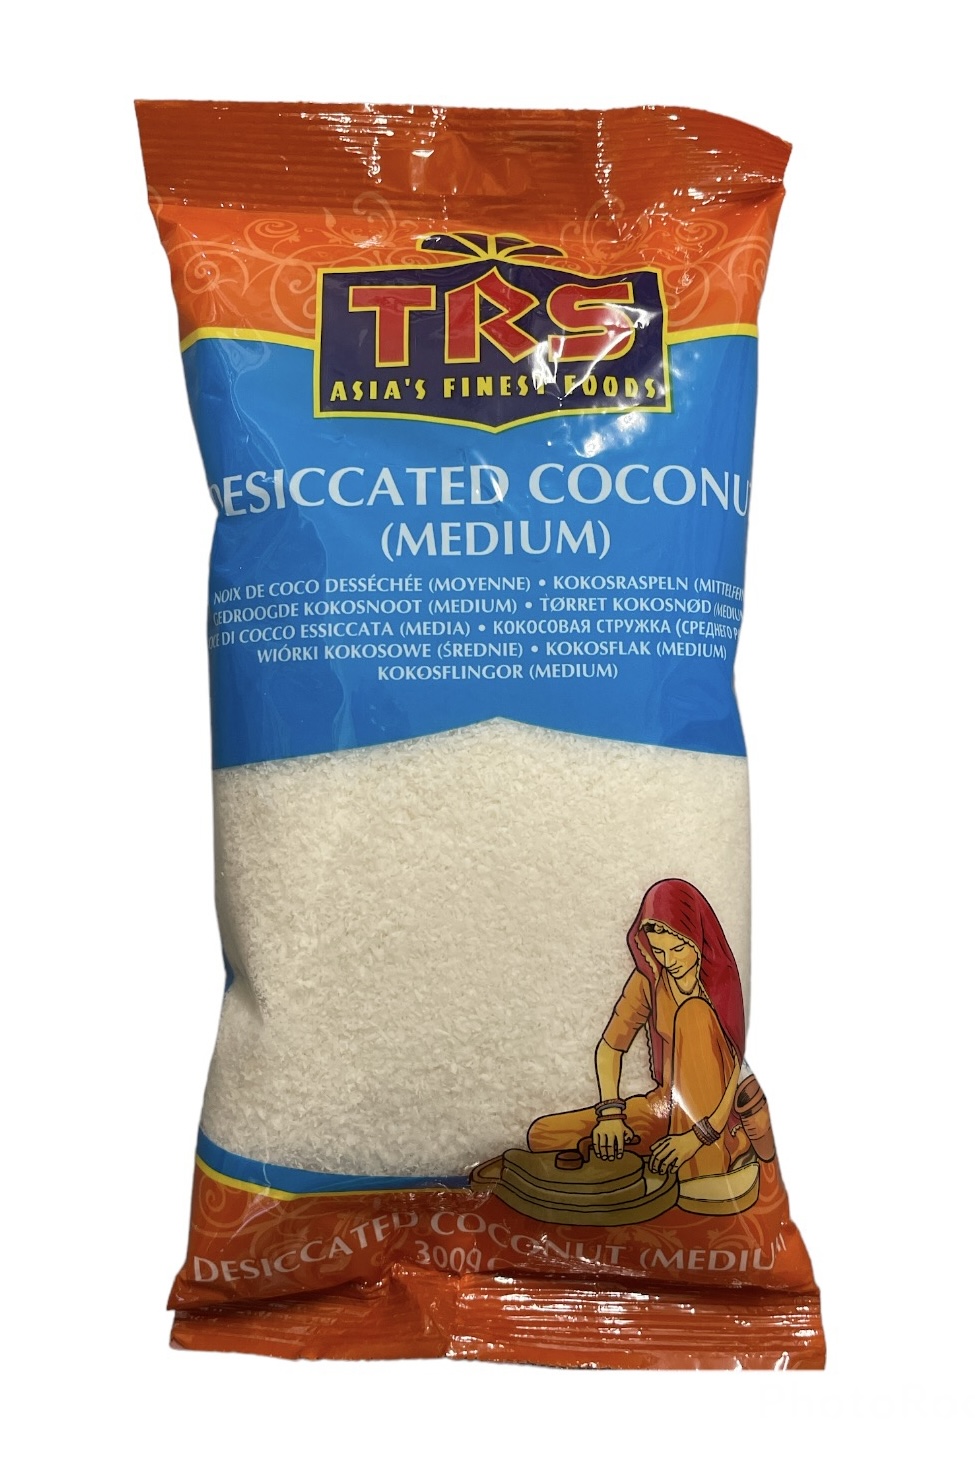 TRS Desiccated Coconut Powder Medium (300g)